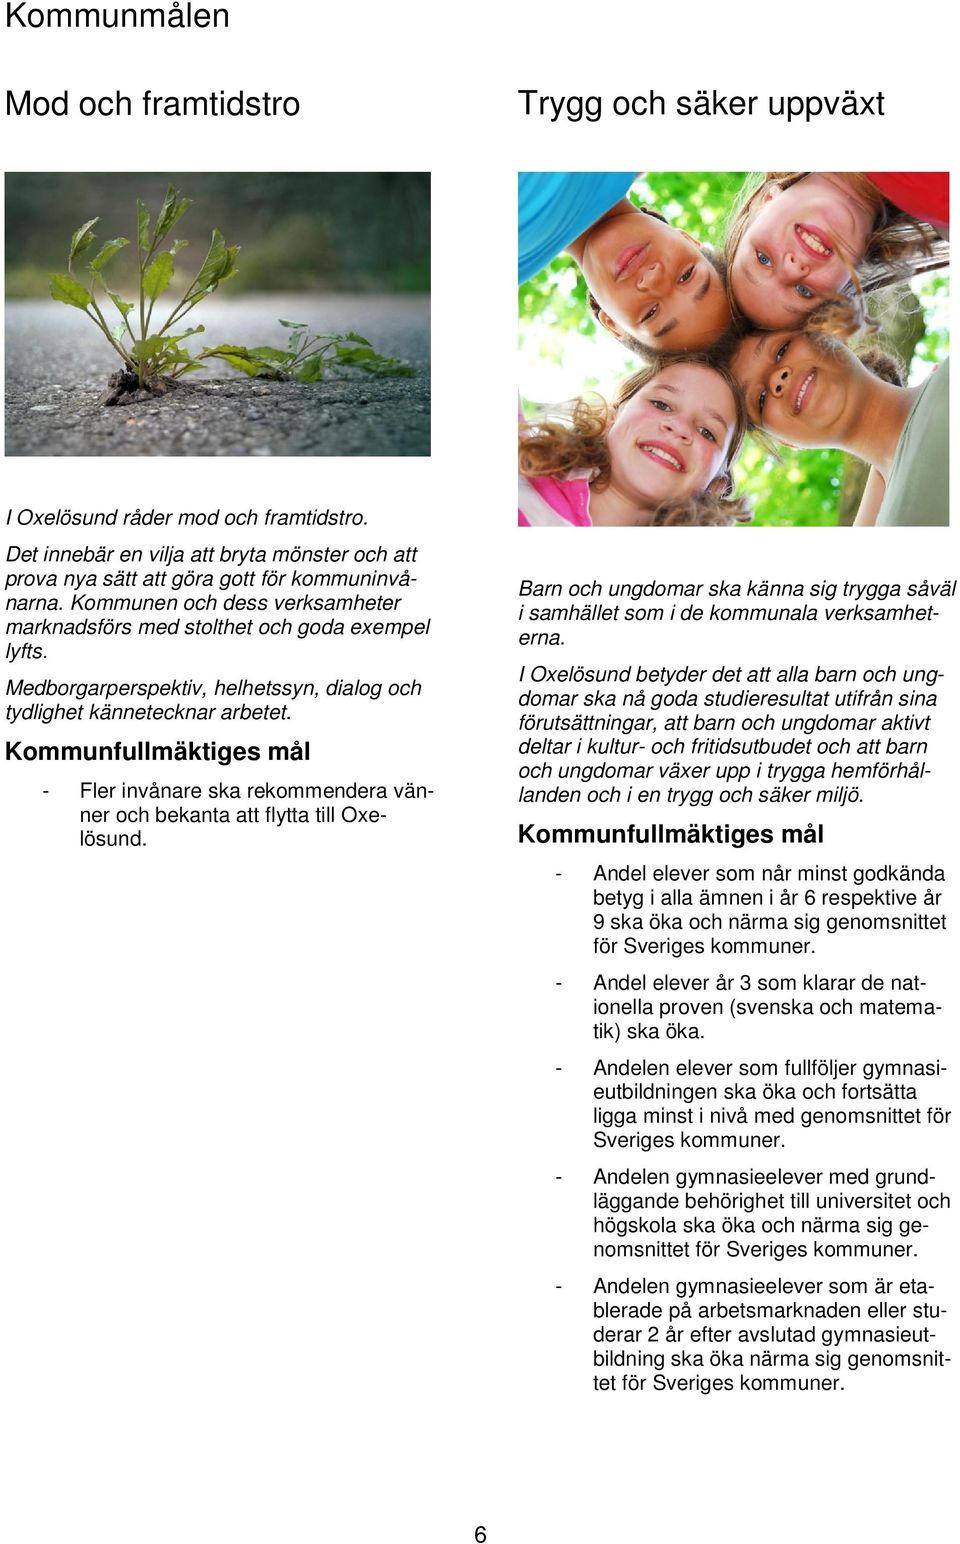 Kommunfullmäktiges mål - Fler invånare ska rekommendera vänner och bekanta att flytta till Oxelösund. Barn och ungdomar ska känna sig trygga såväl i samhället som i de kommunala verksamheterna.